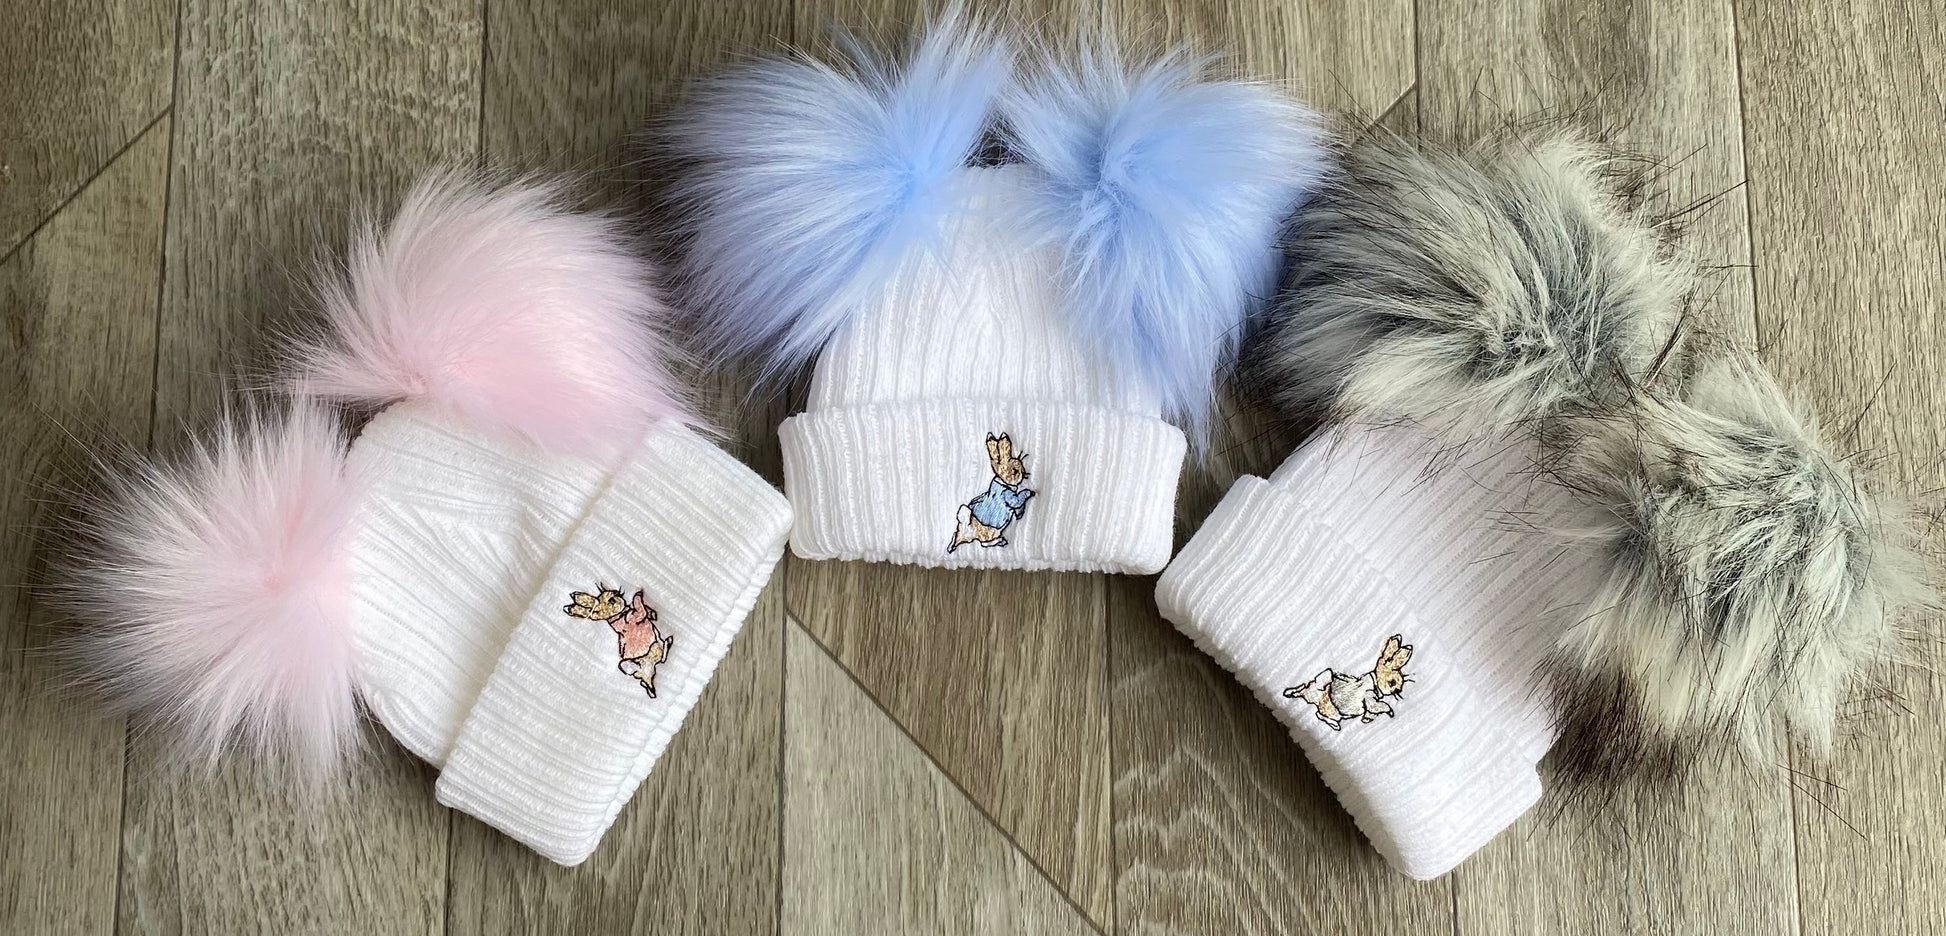 Peter Rabbit hats